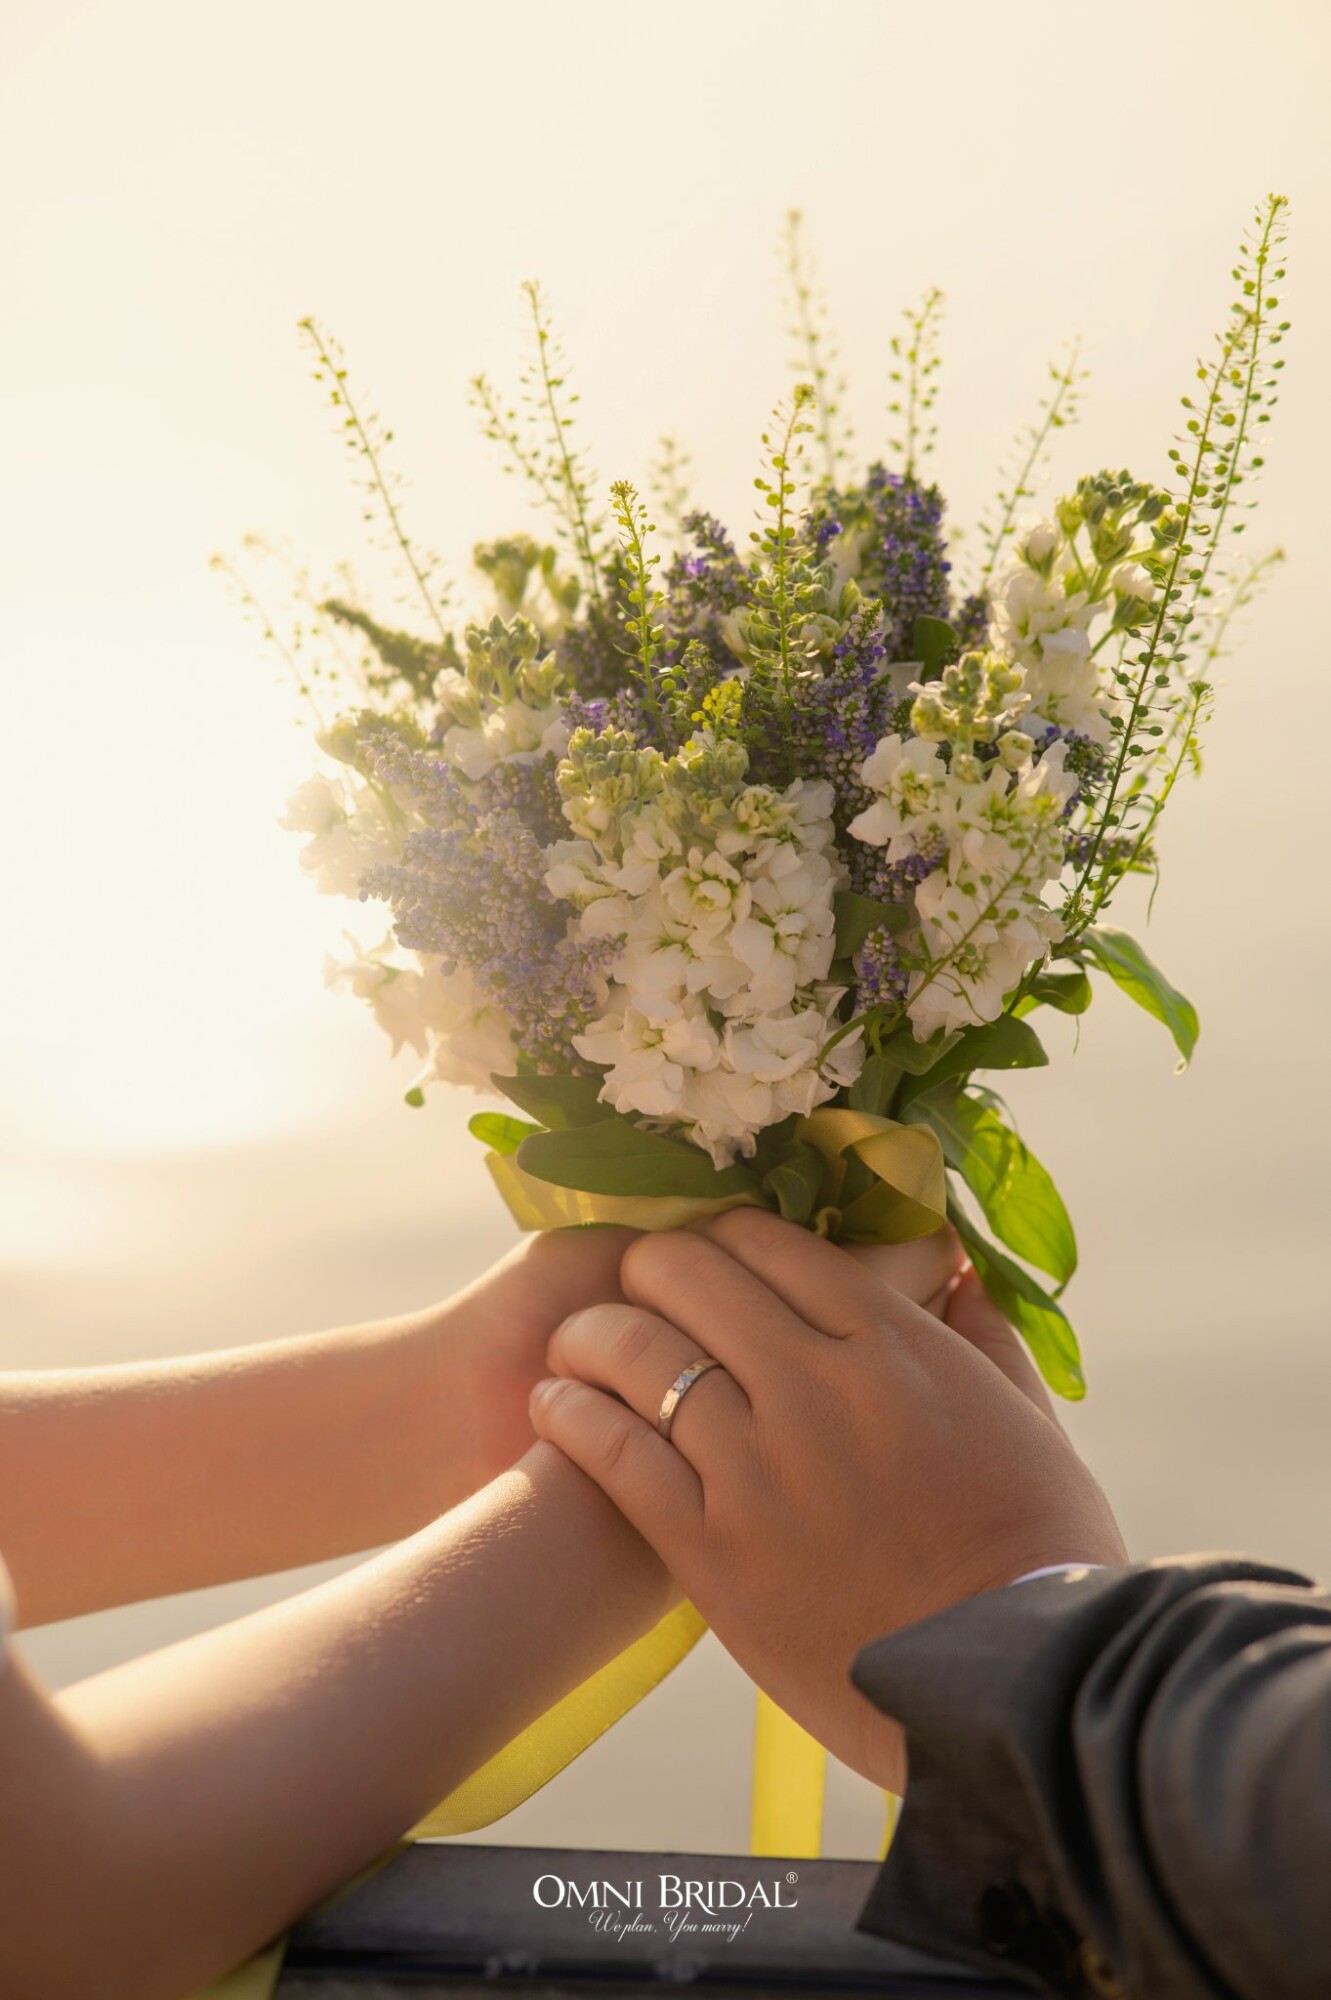 Ý tưởng hoa cưới đẹp kết hợp nhiều loại hoa